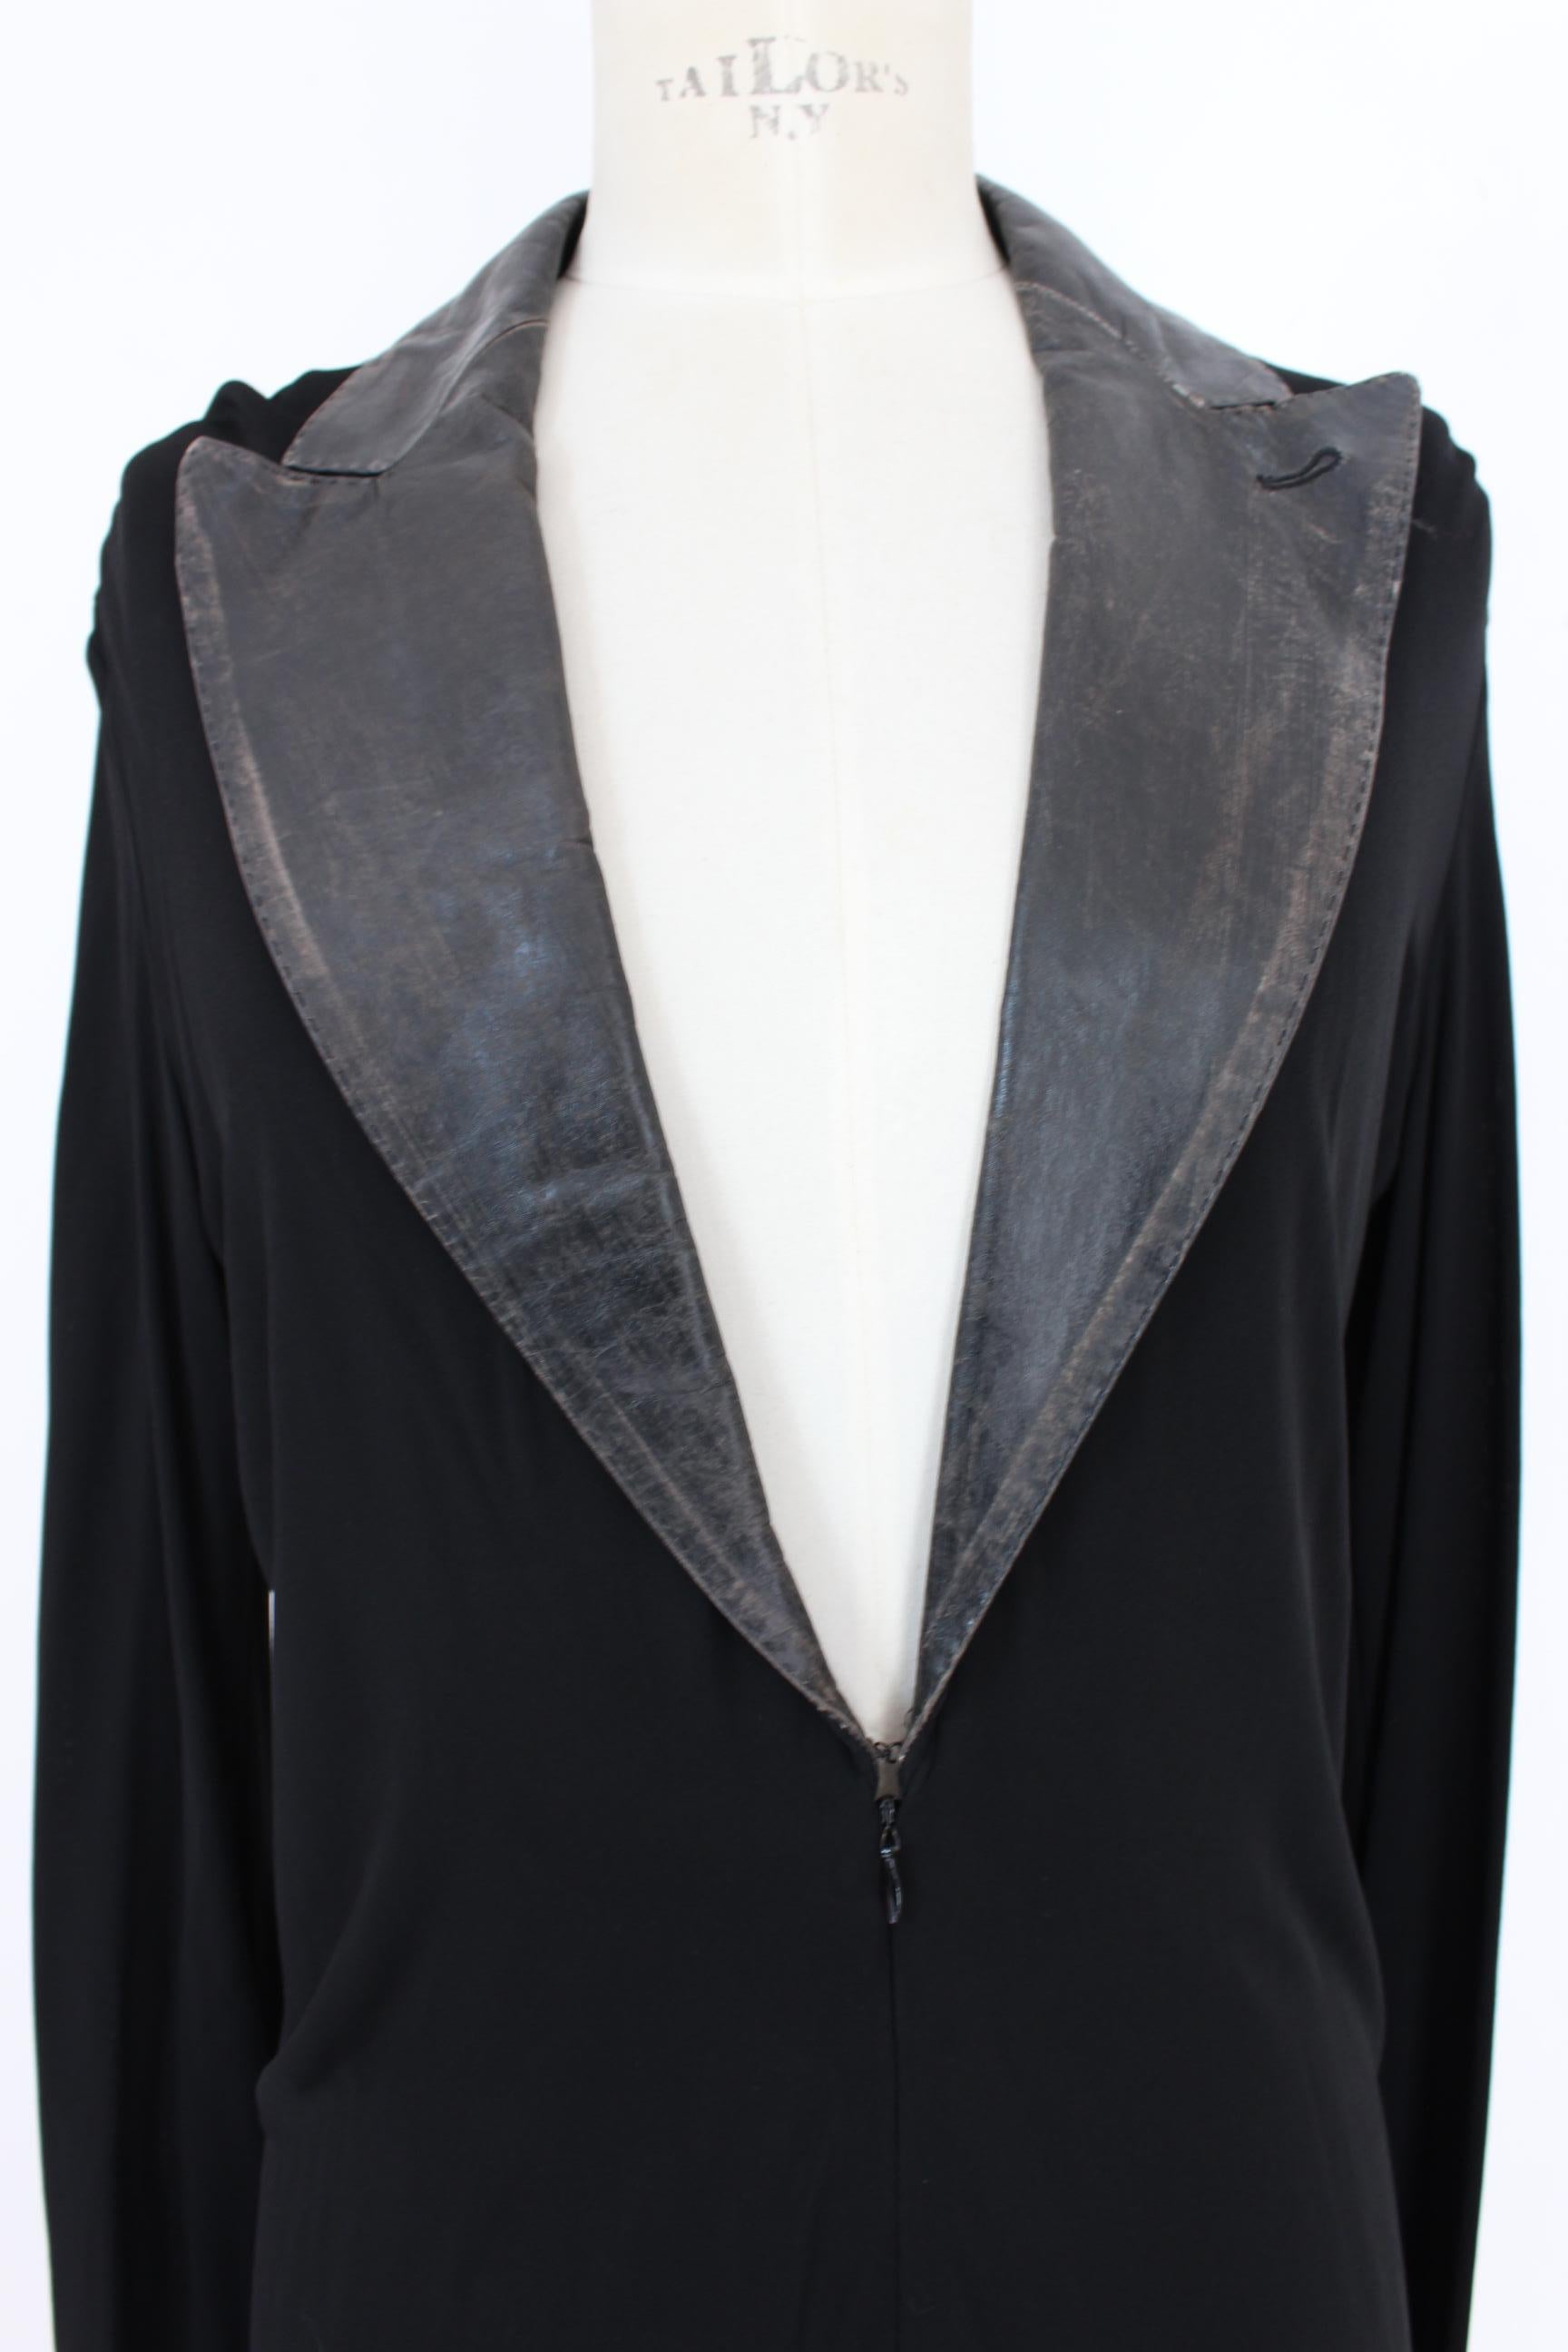 Jean Paul Gaultier Black Jumpsuit Leather Plunge V-Neck Collar Elegant 1990s 3